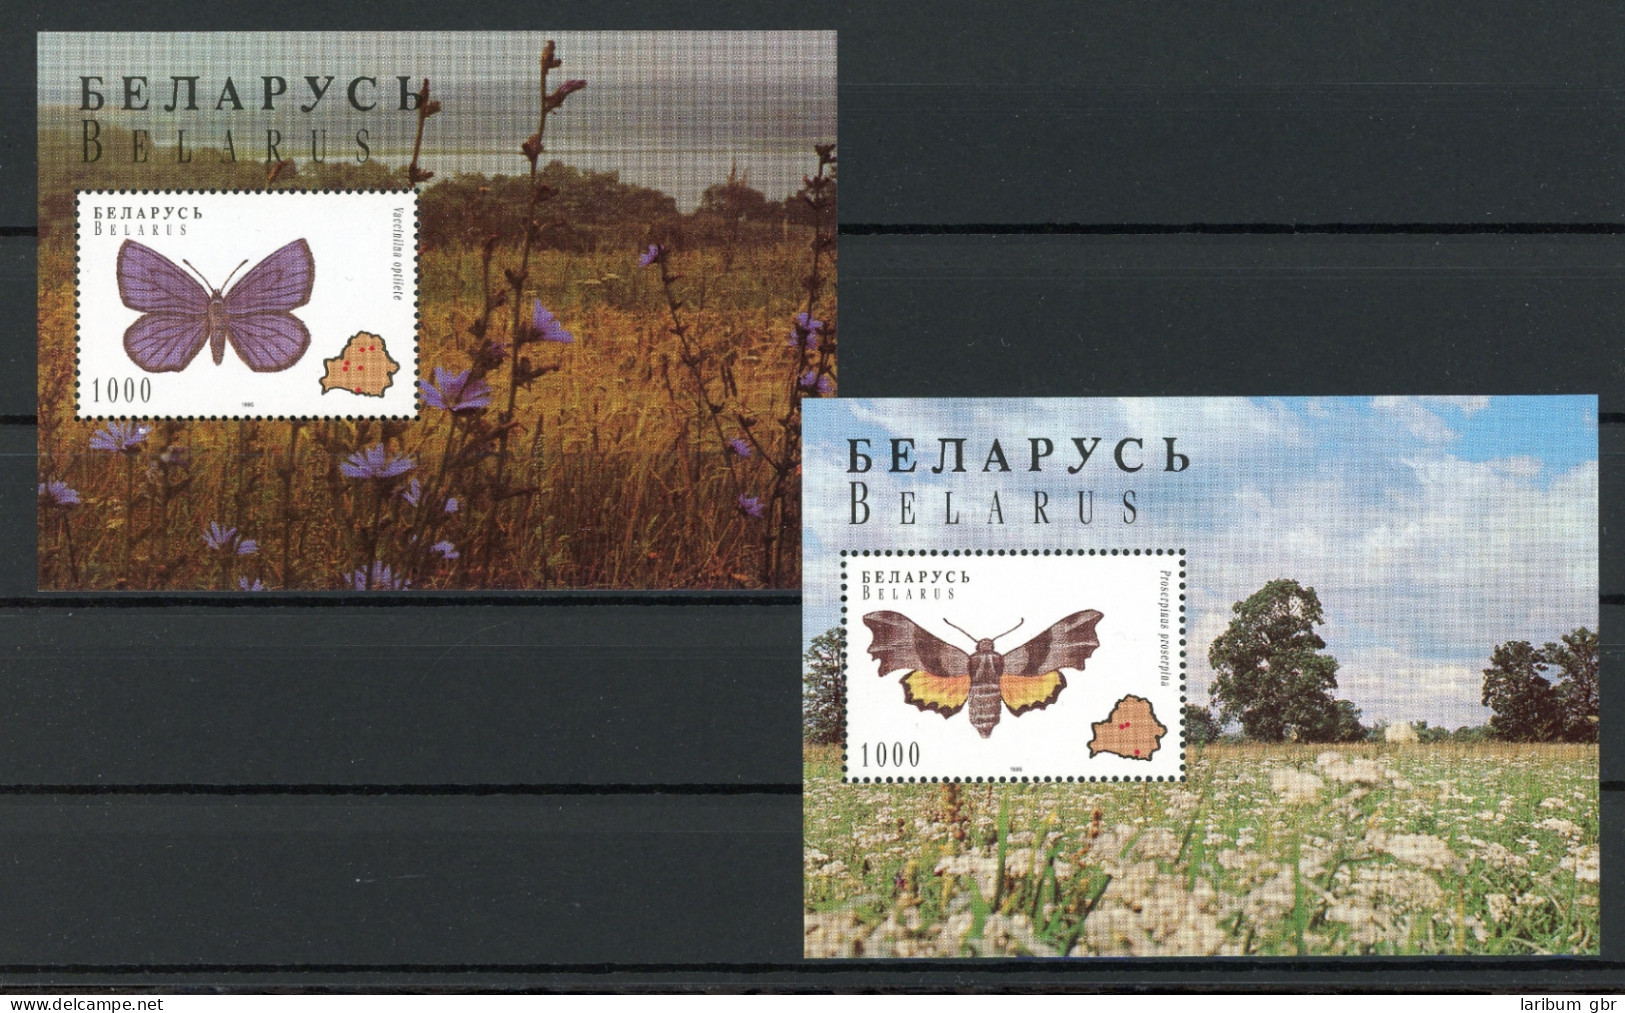 Weißrussland Block 7-8 Postfrisch Schmetterlinge #HX140 - Wit-Rusland